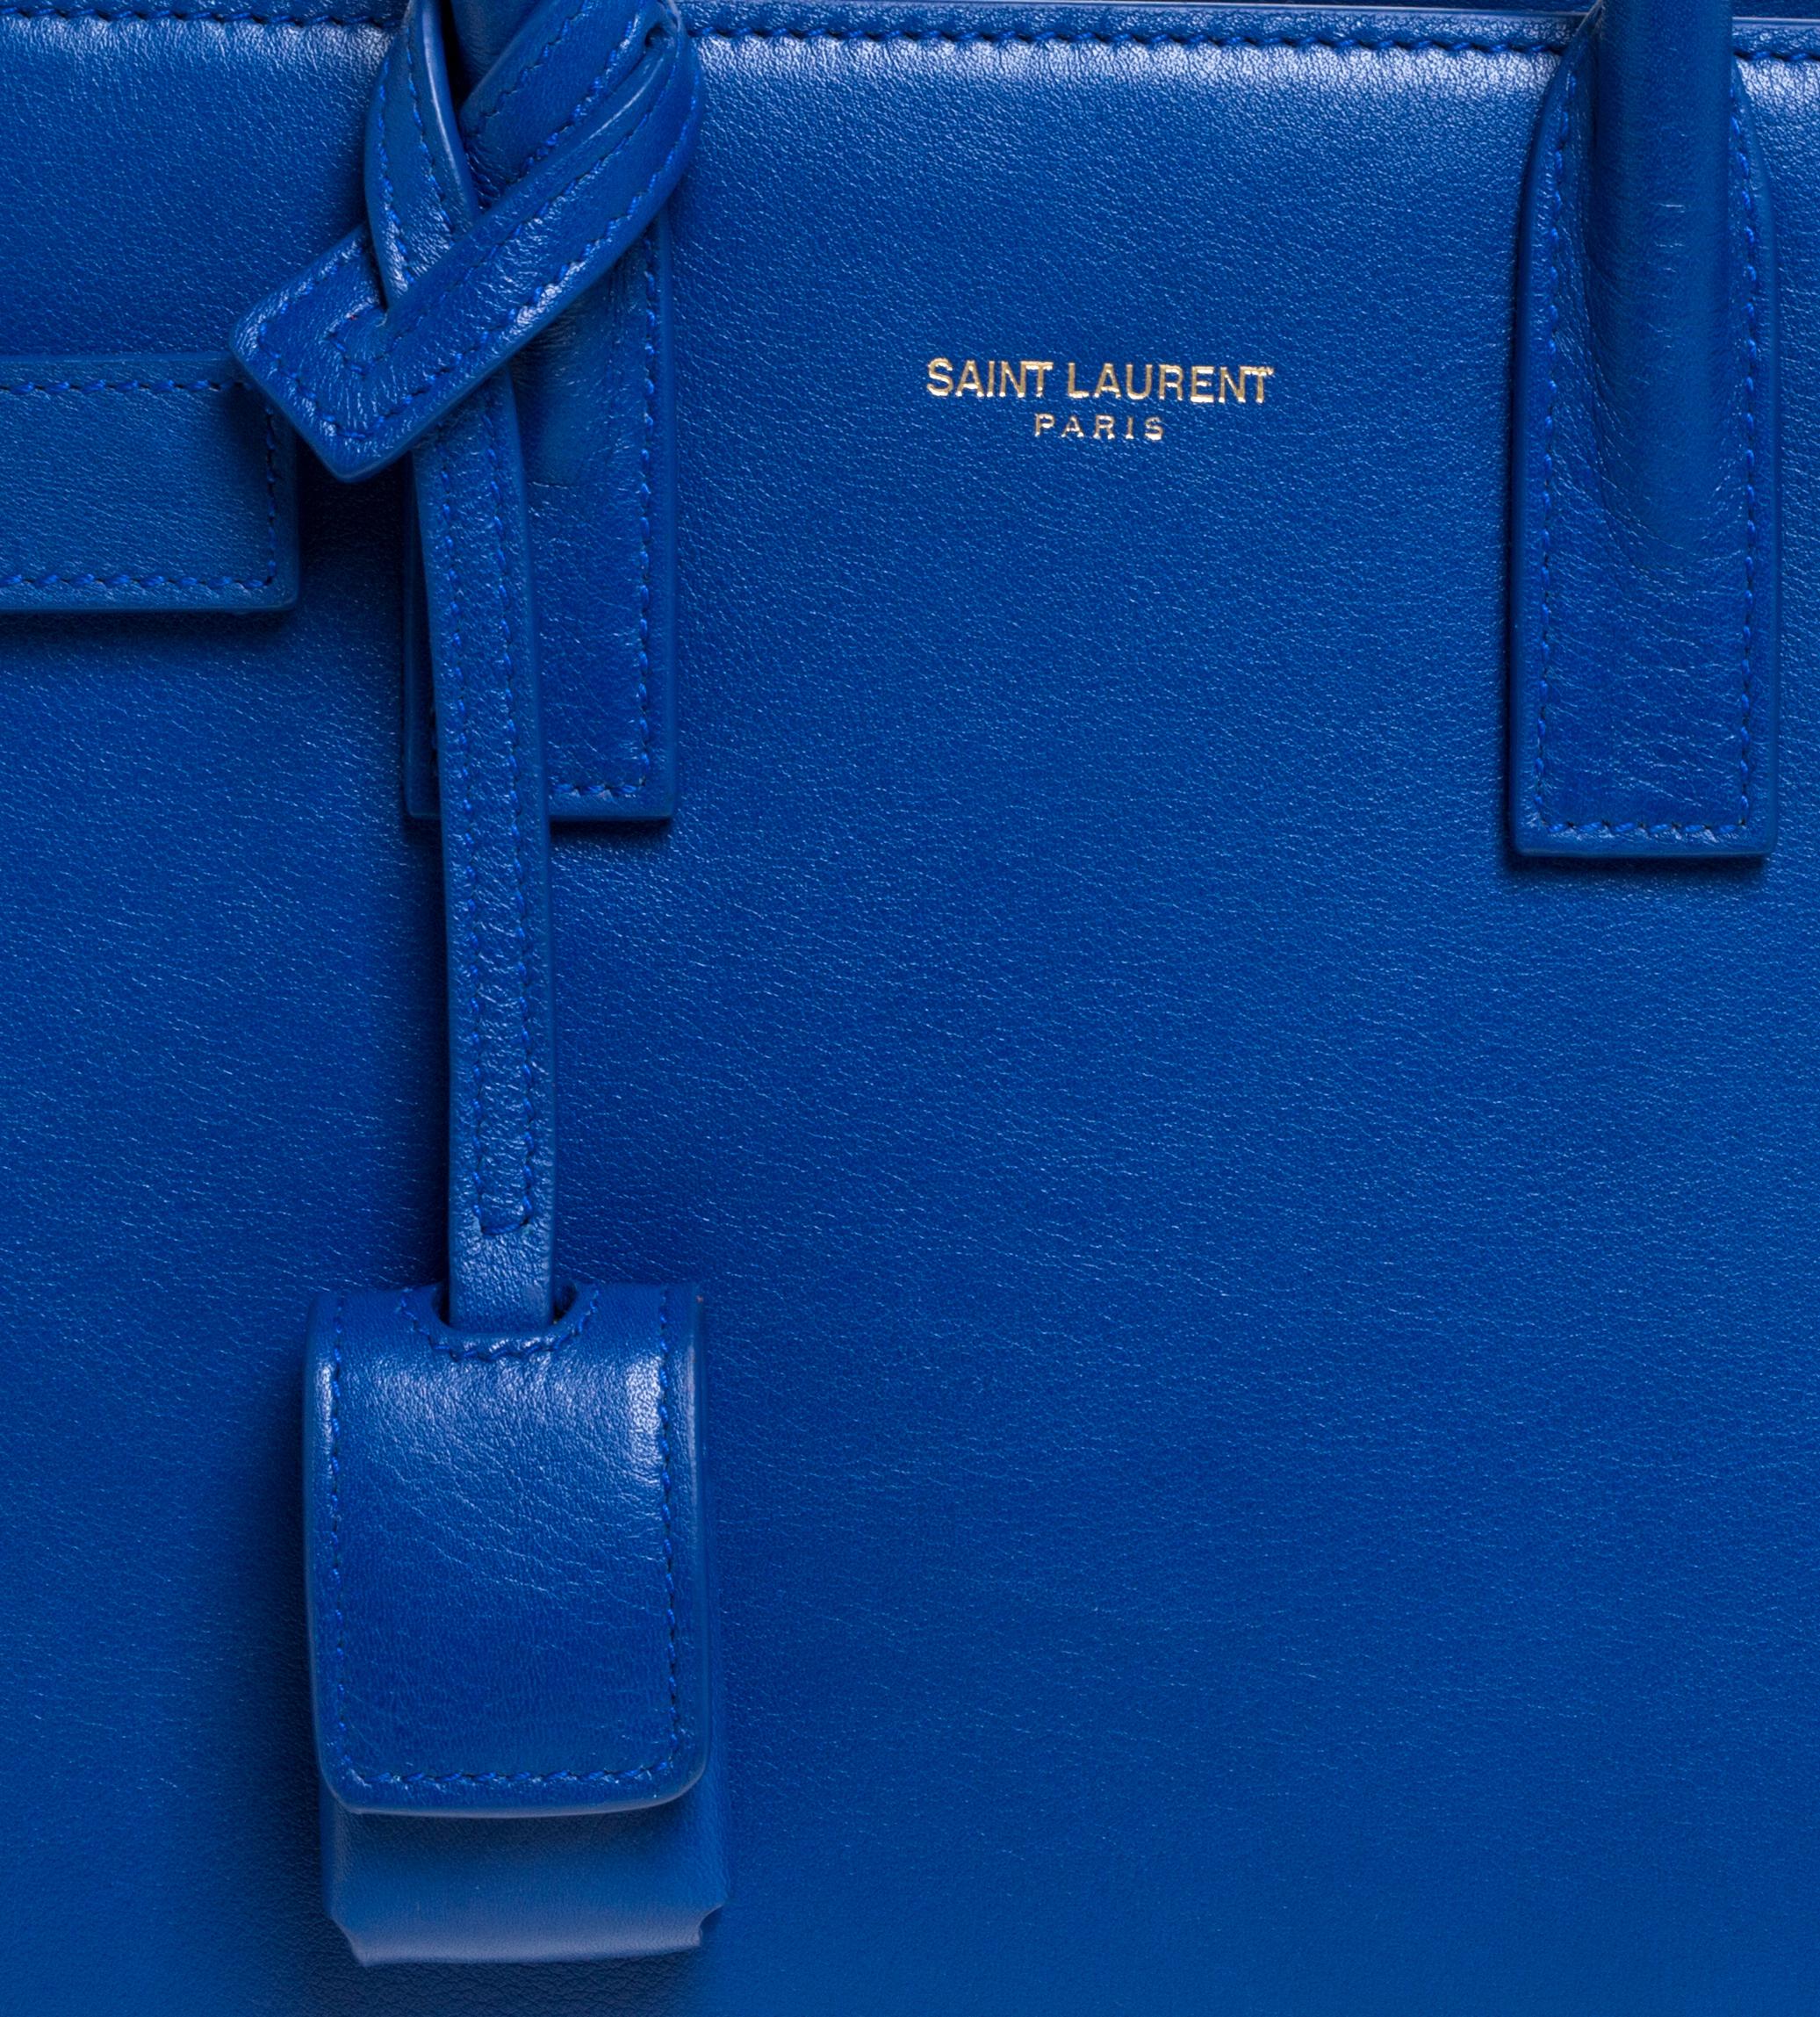 saint laurent bag blue